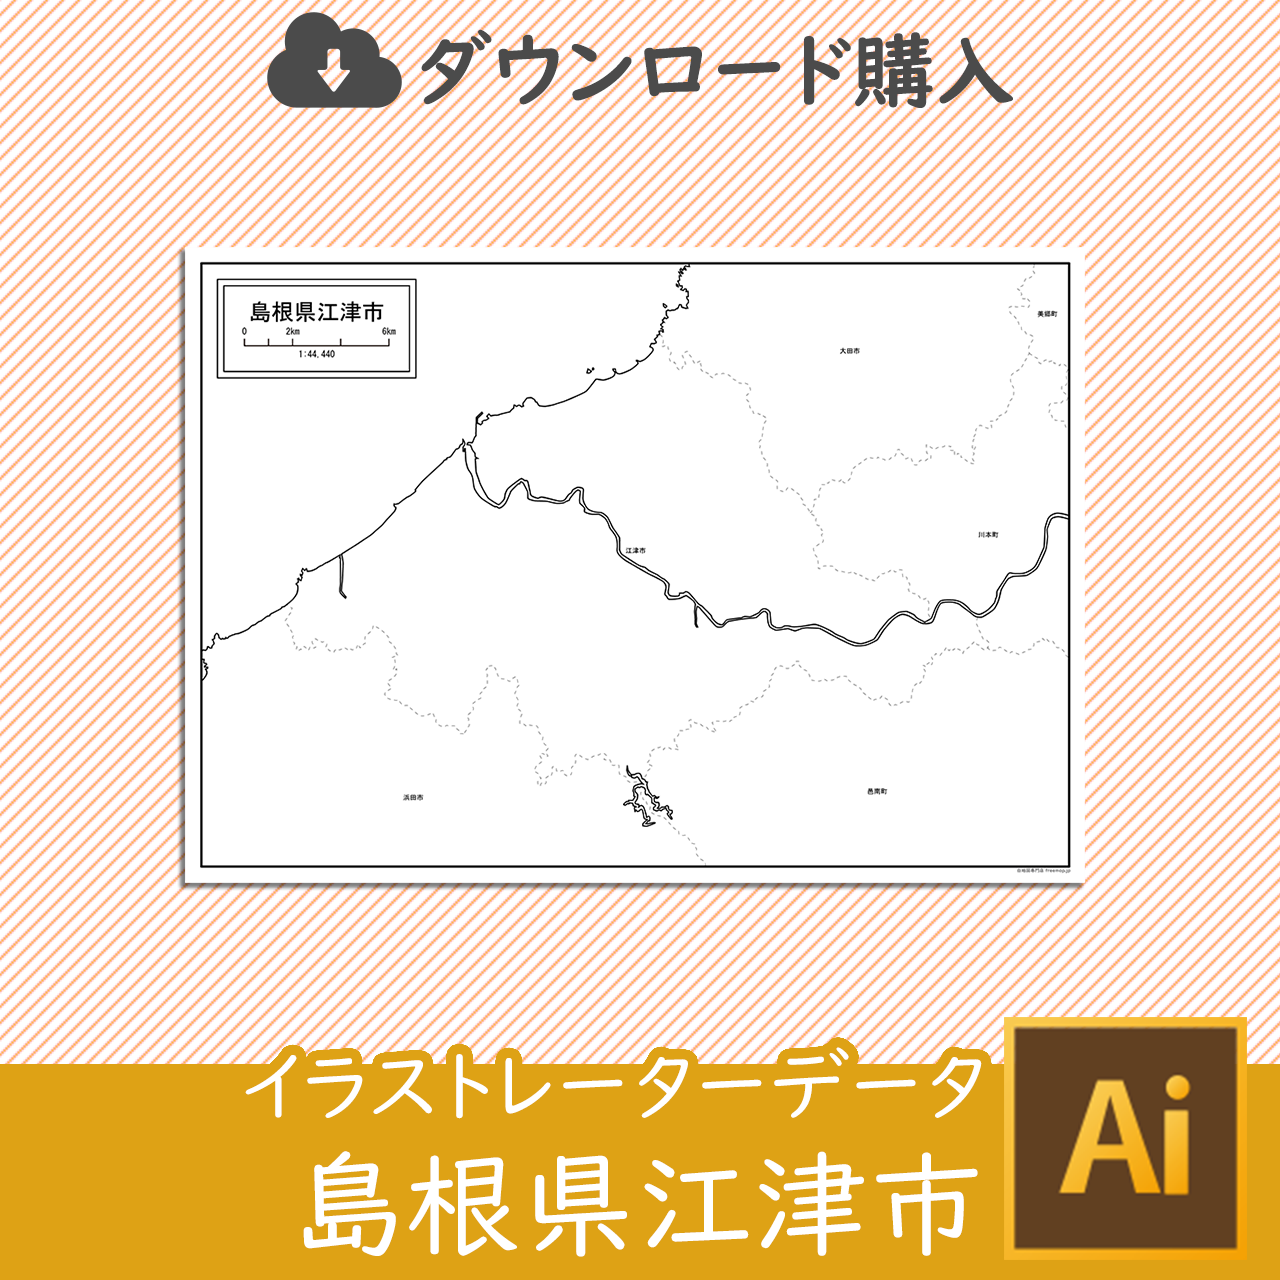 江津市のaiデータのサムネイル画像